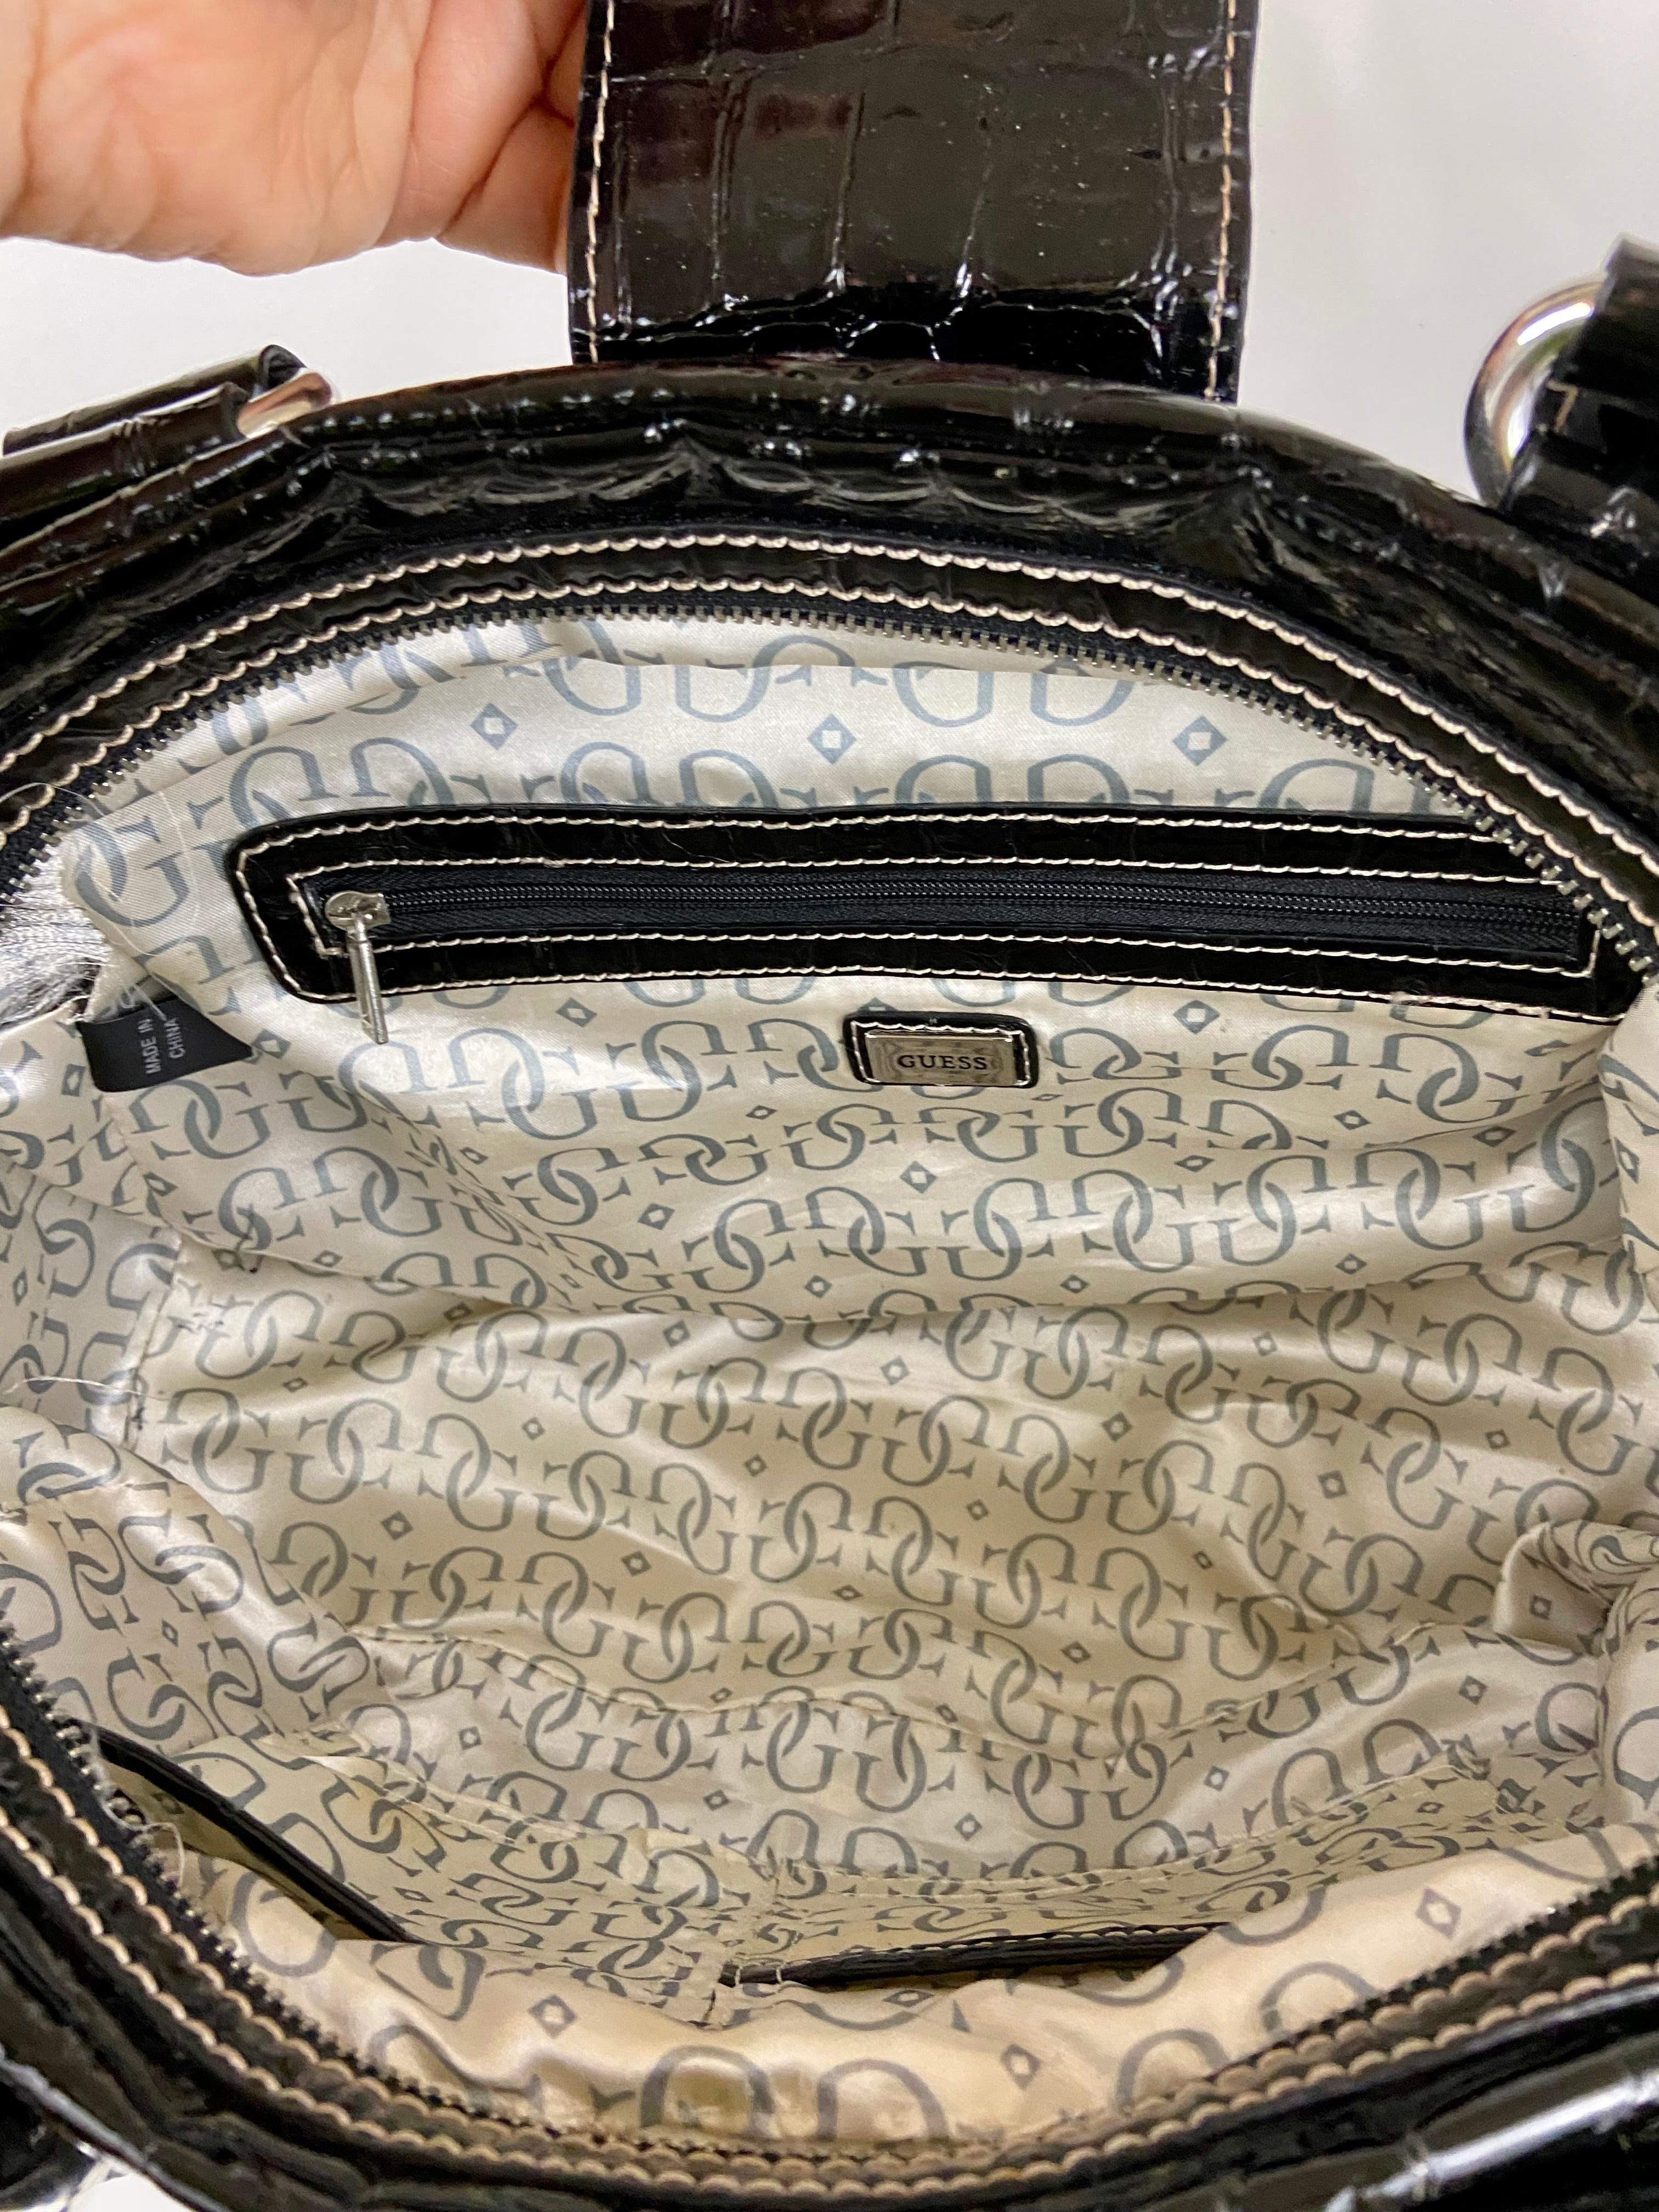 Guess Croc Print Faux Leather
Shoulder Bag